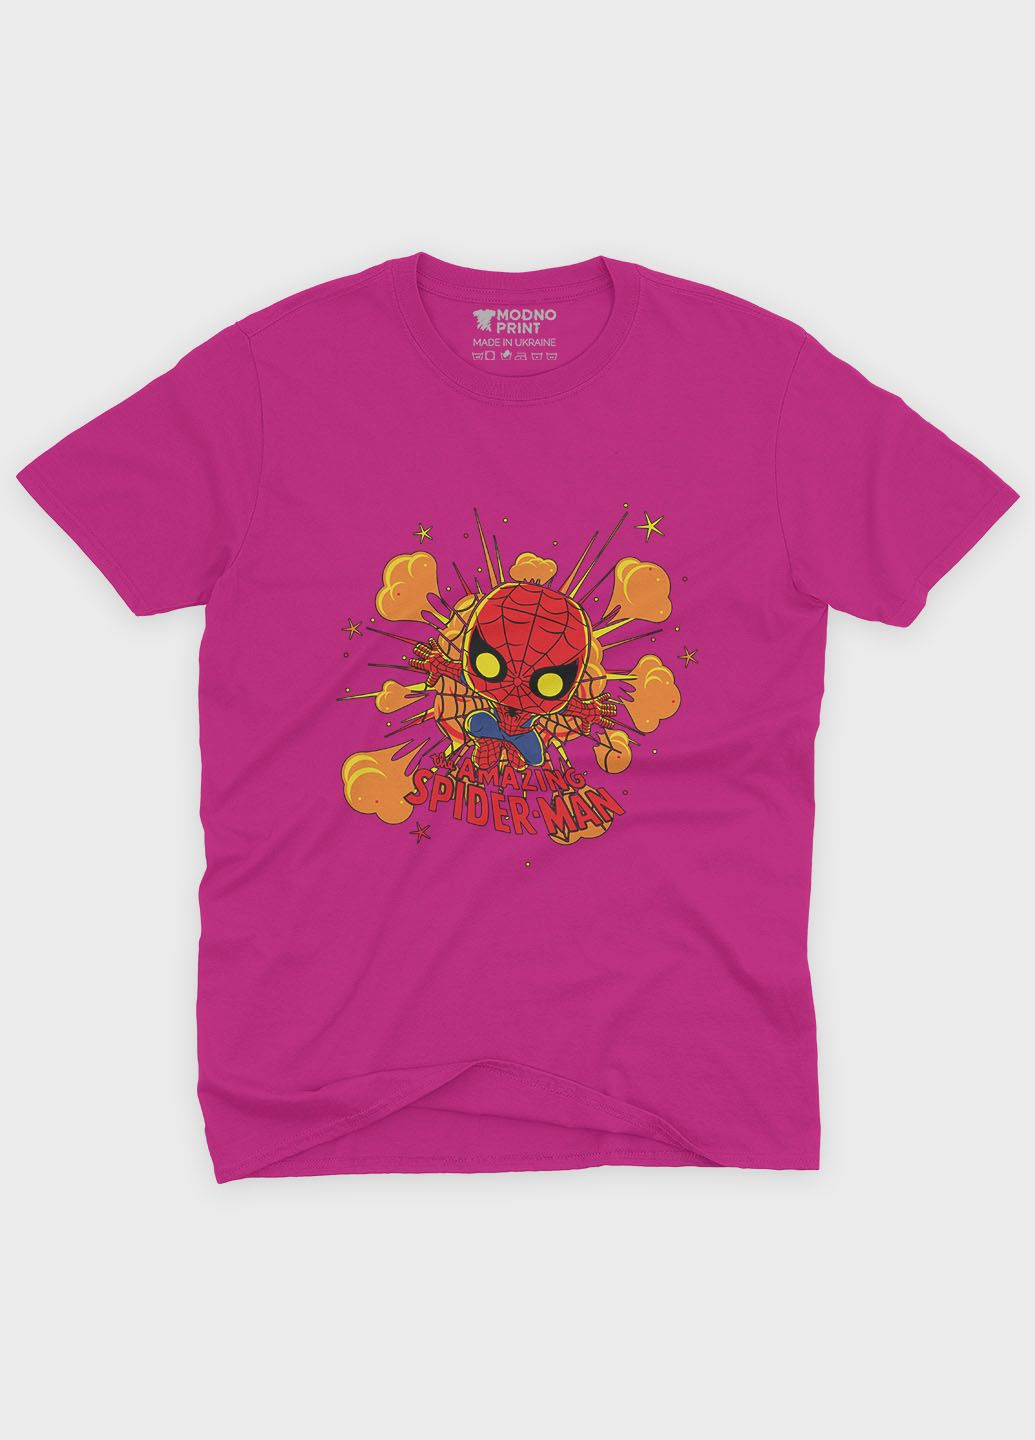 Розовая демисезонная футболка для девочки с принтом супергероя - человек-паук (ts001-1-fuxj-006-014-056-g) Modno